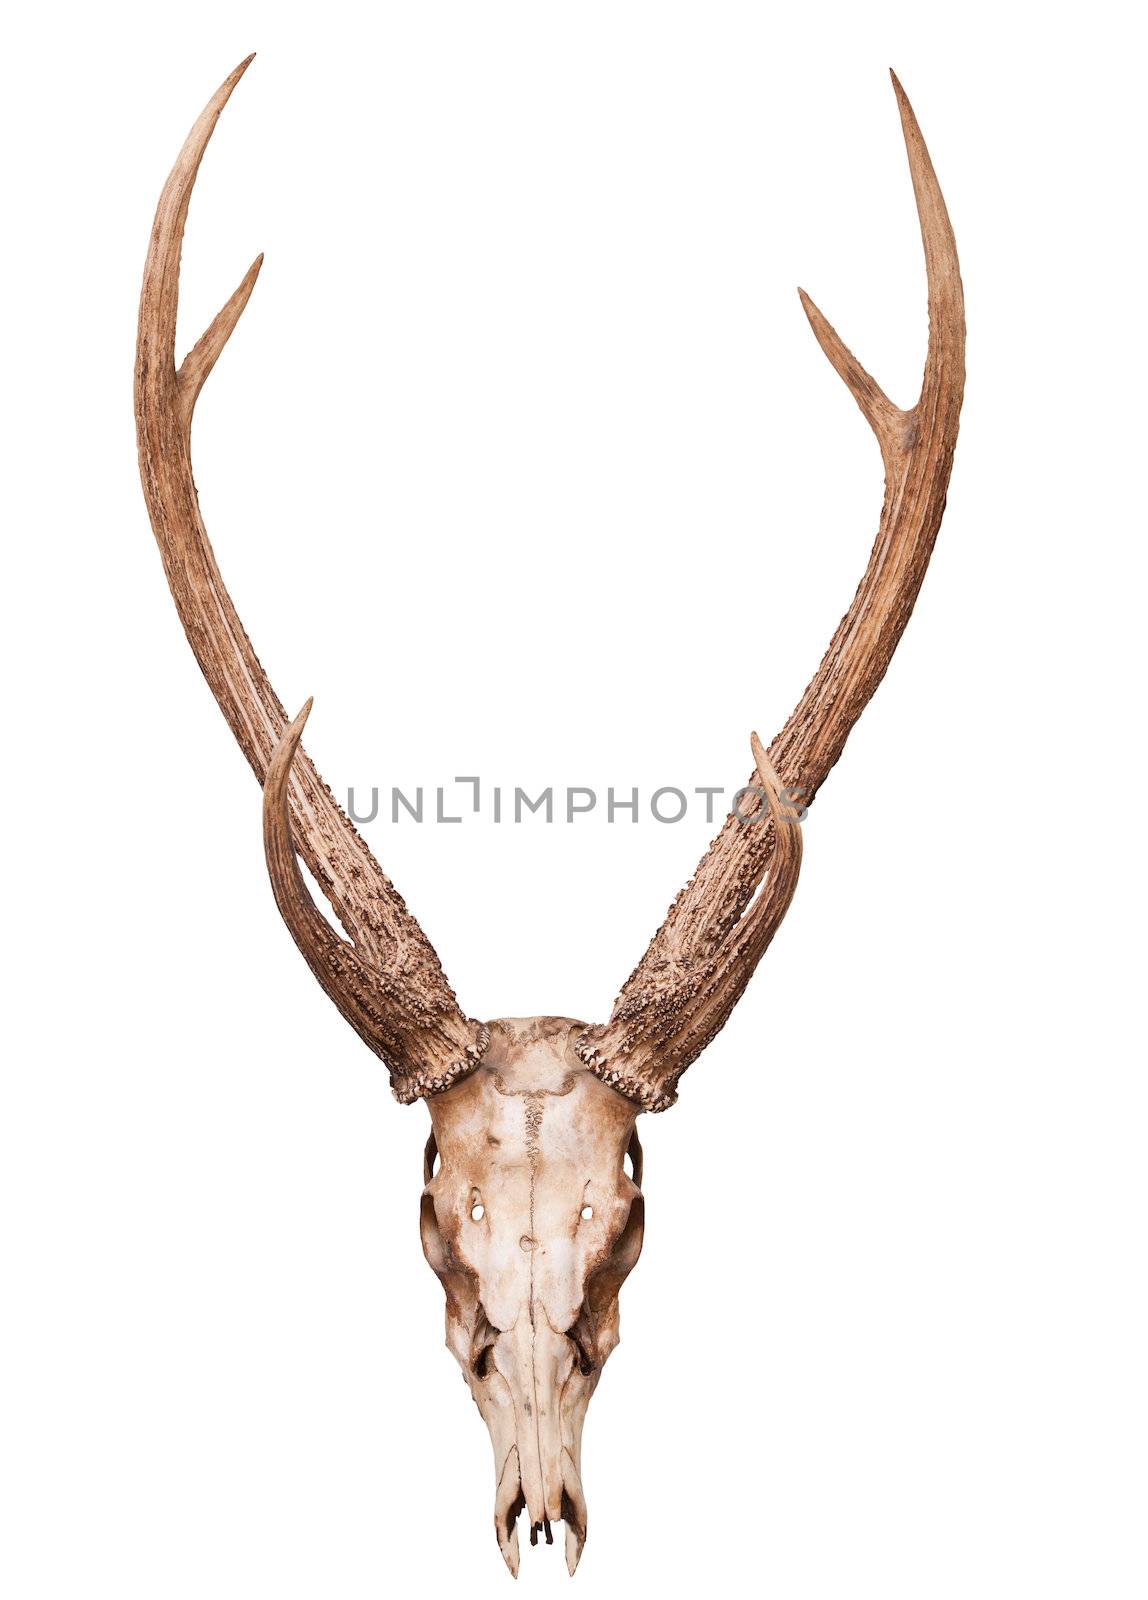 samba deer skull horn isolated on white backgorund by khunaspix